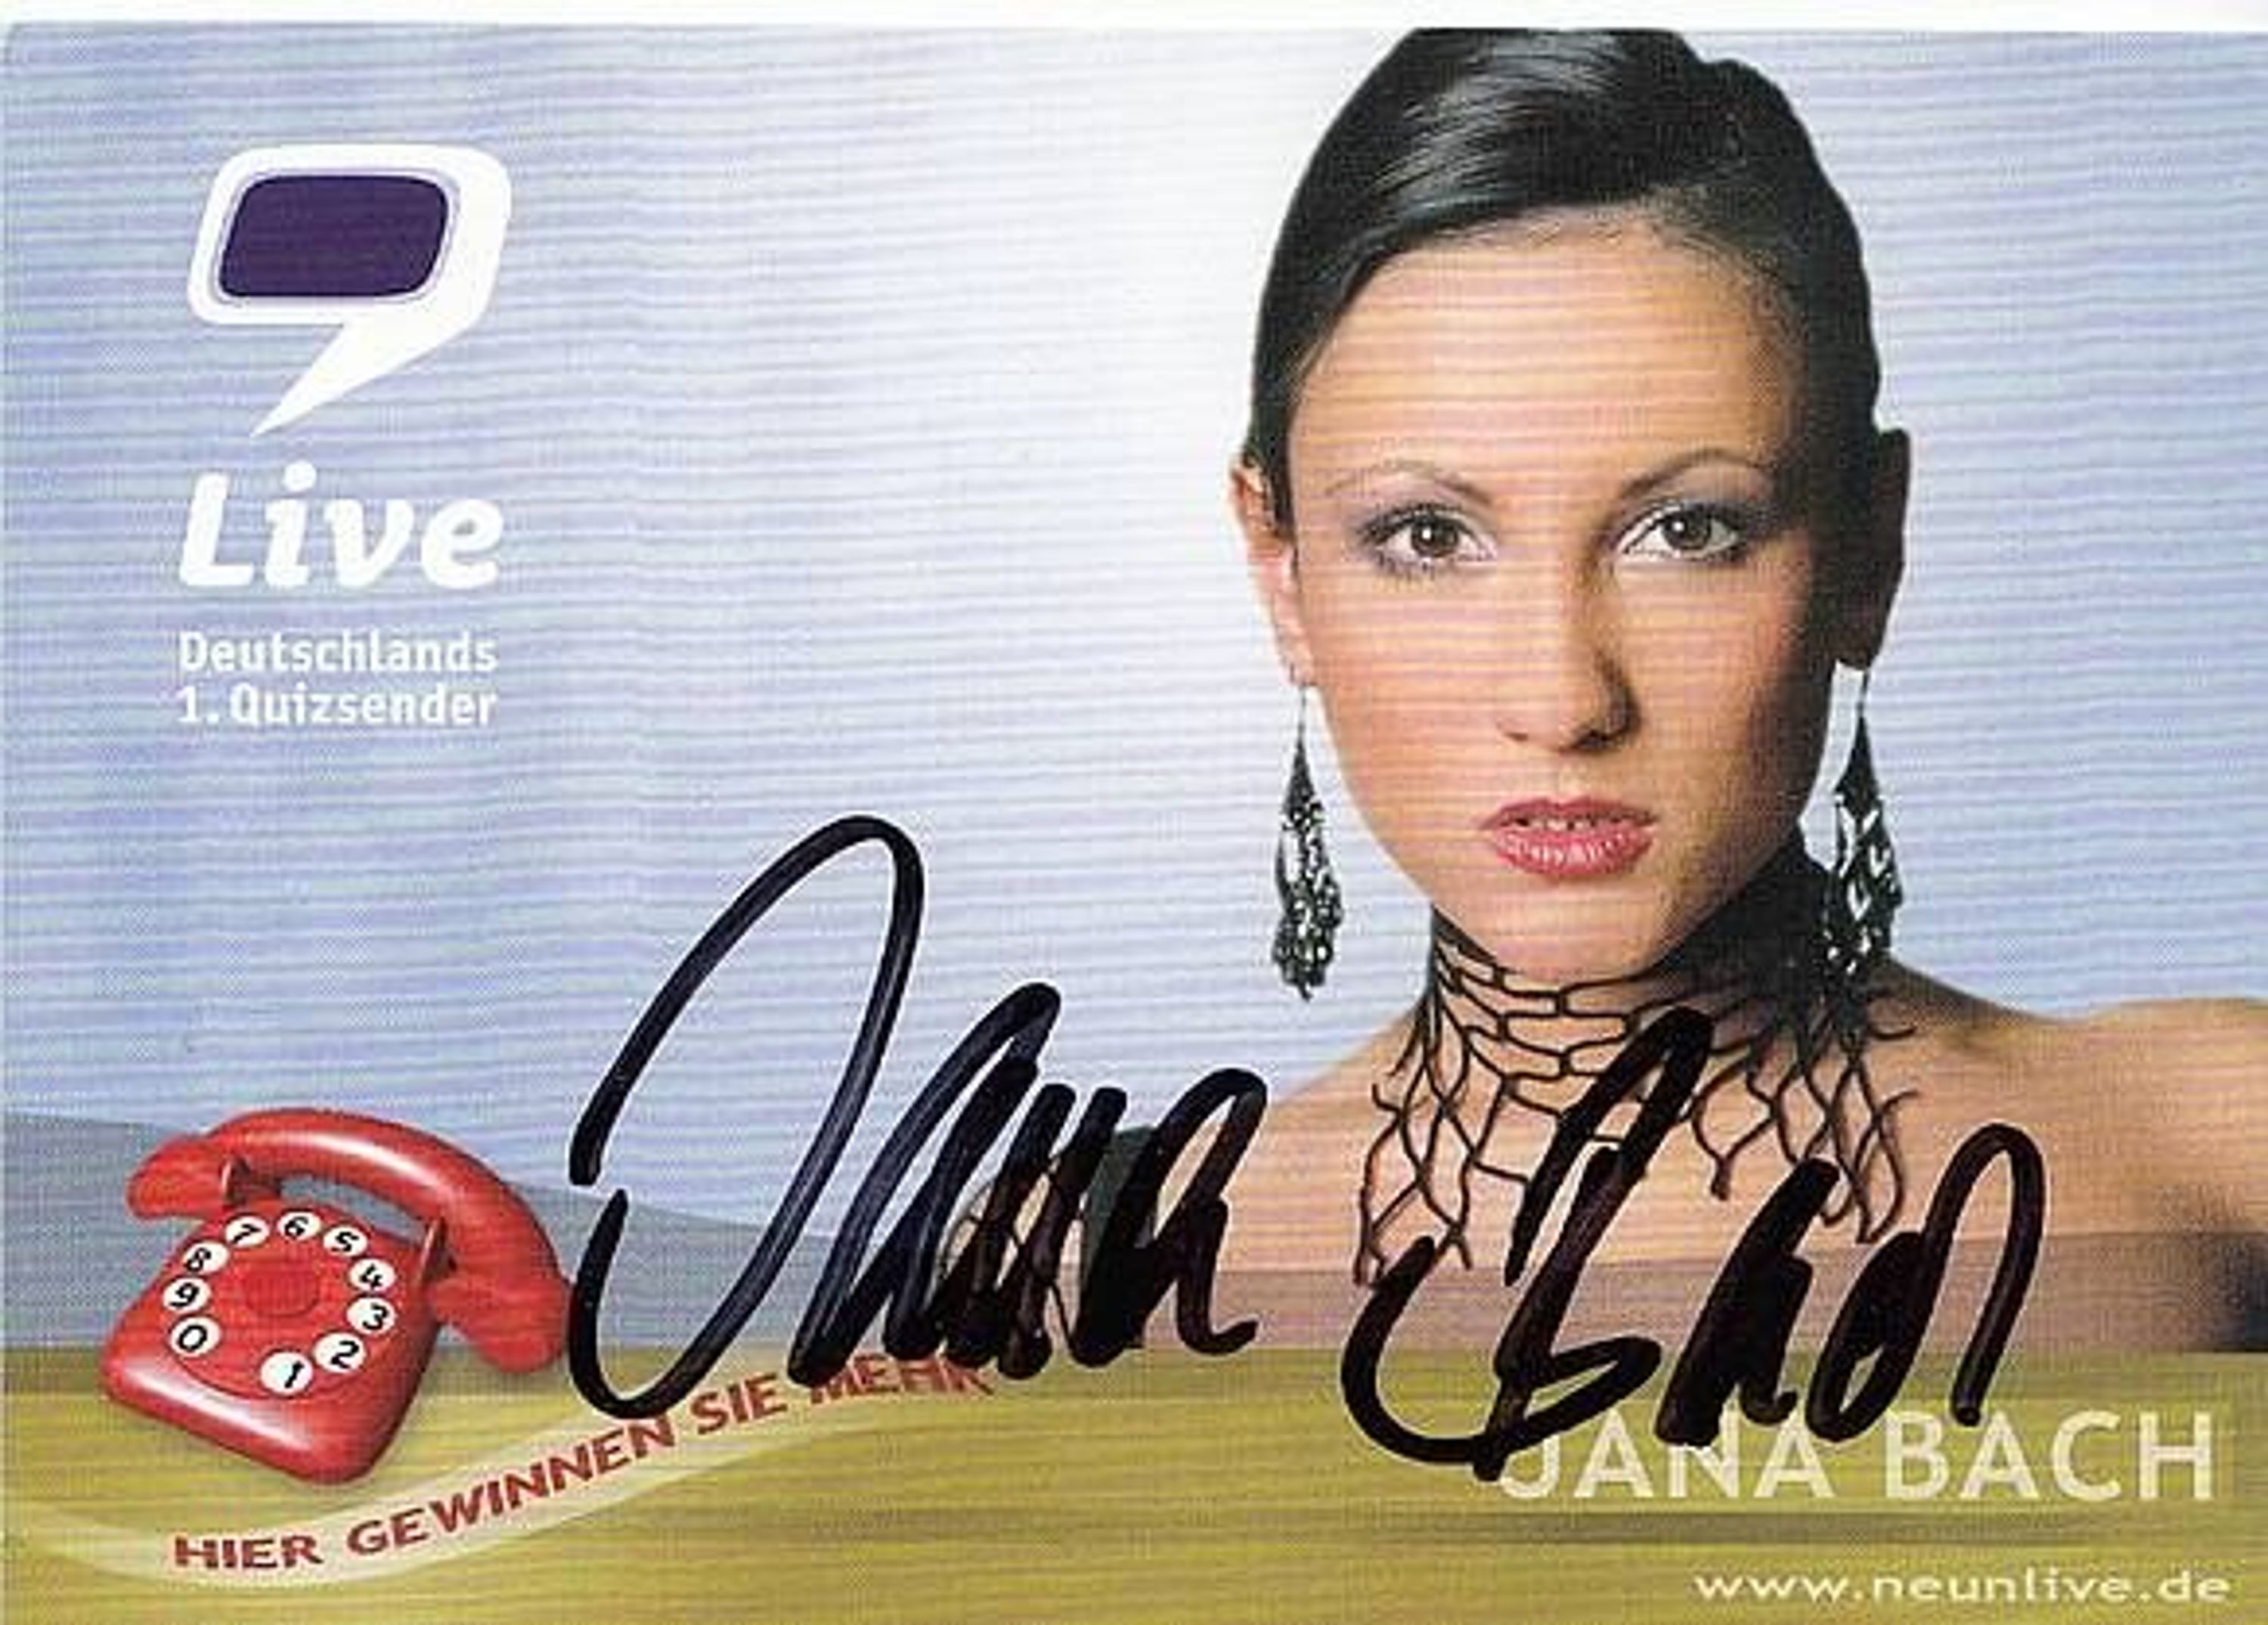 <b>Jana Bach</b> Autogrammkarte Original Signiert bek. aus 9 Live + 55443 gebraucht ... - 31026504